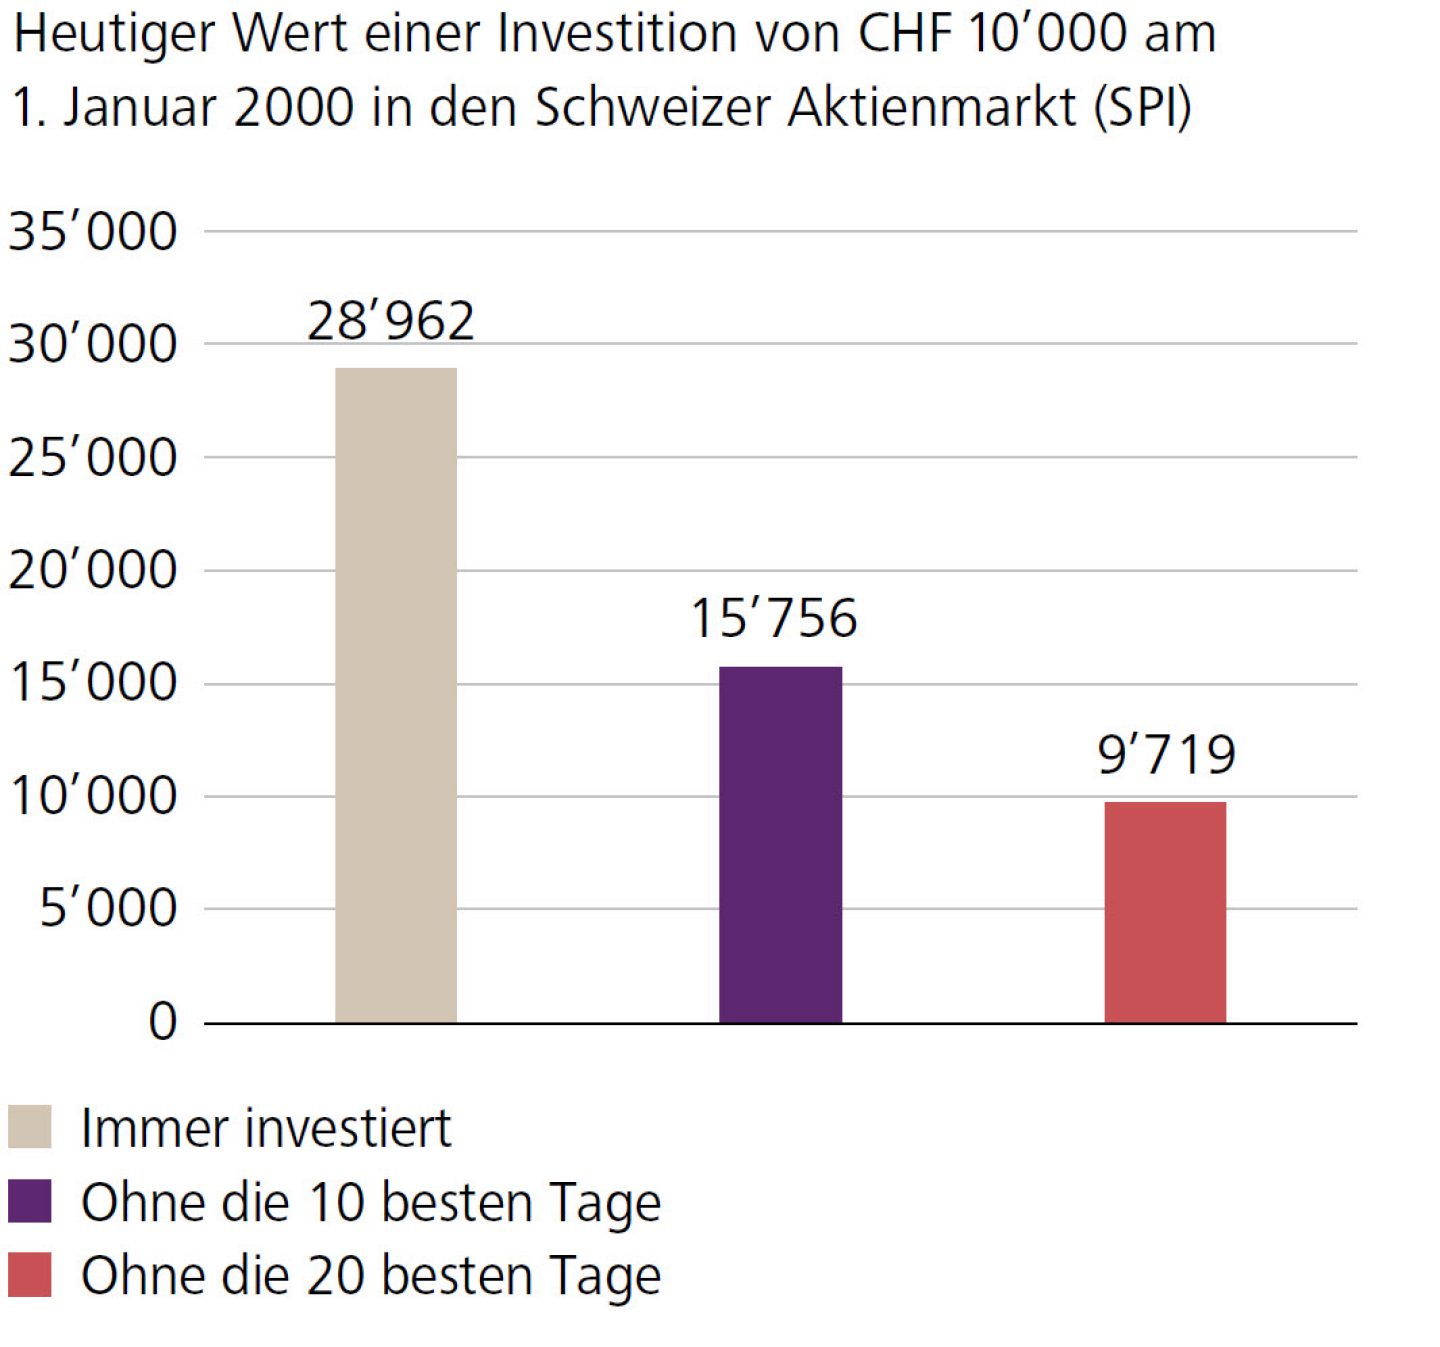 Heutiger Wert einer Investition von CHF 10’000 am 1. Januar 2000 in den Schweizer Aktienmarkt (SPI)